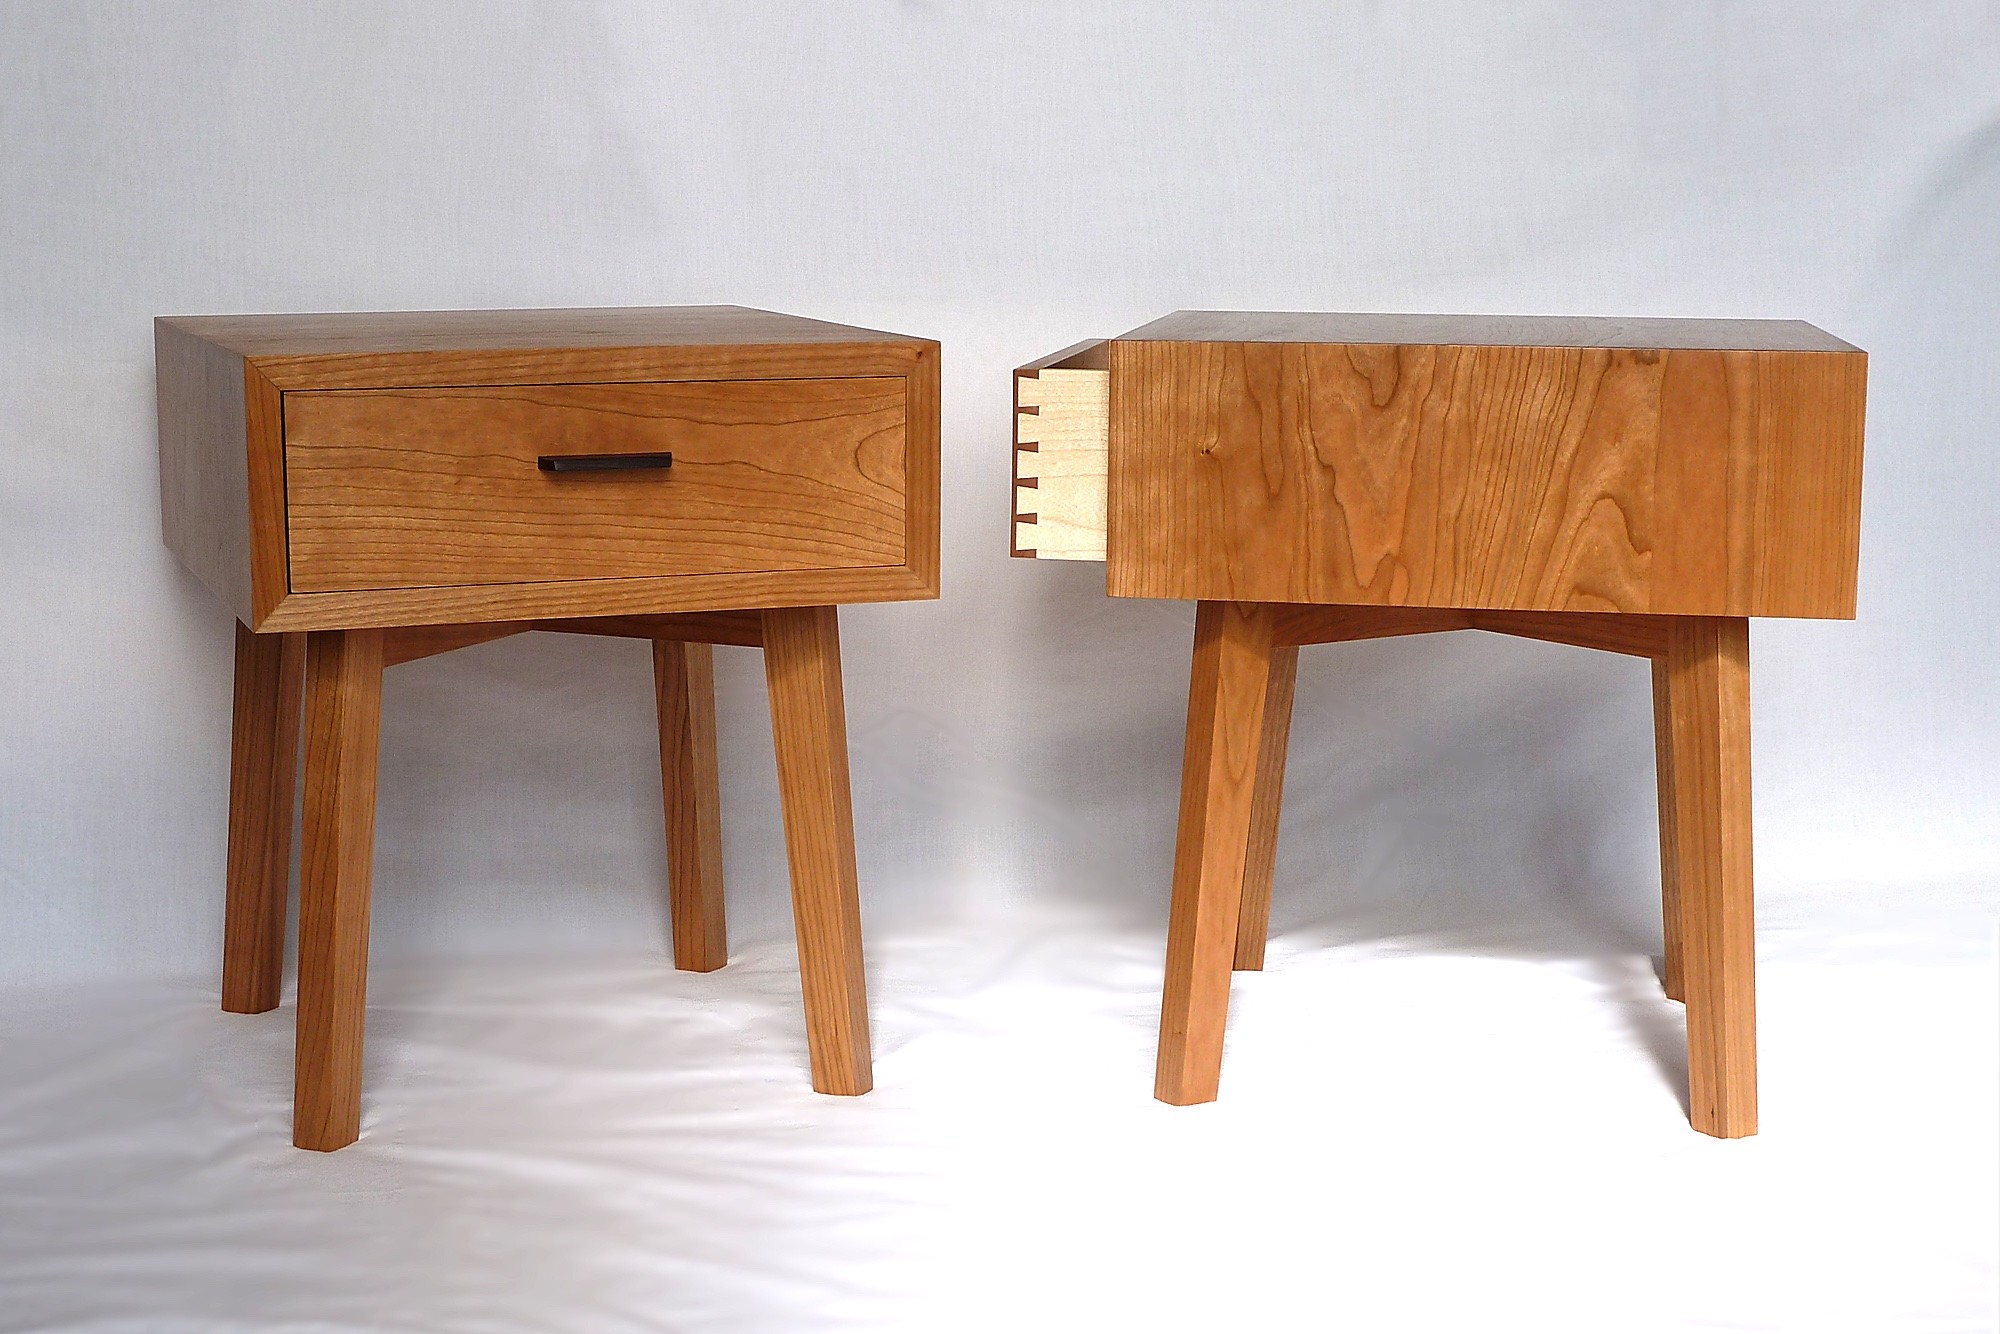 Irene Banham Beautifully Handcrafted Bespoke Furniture